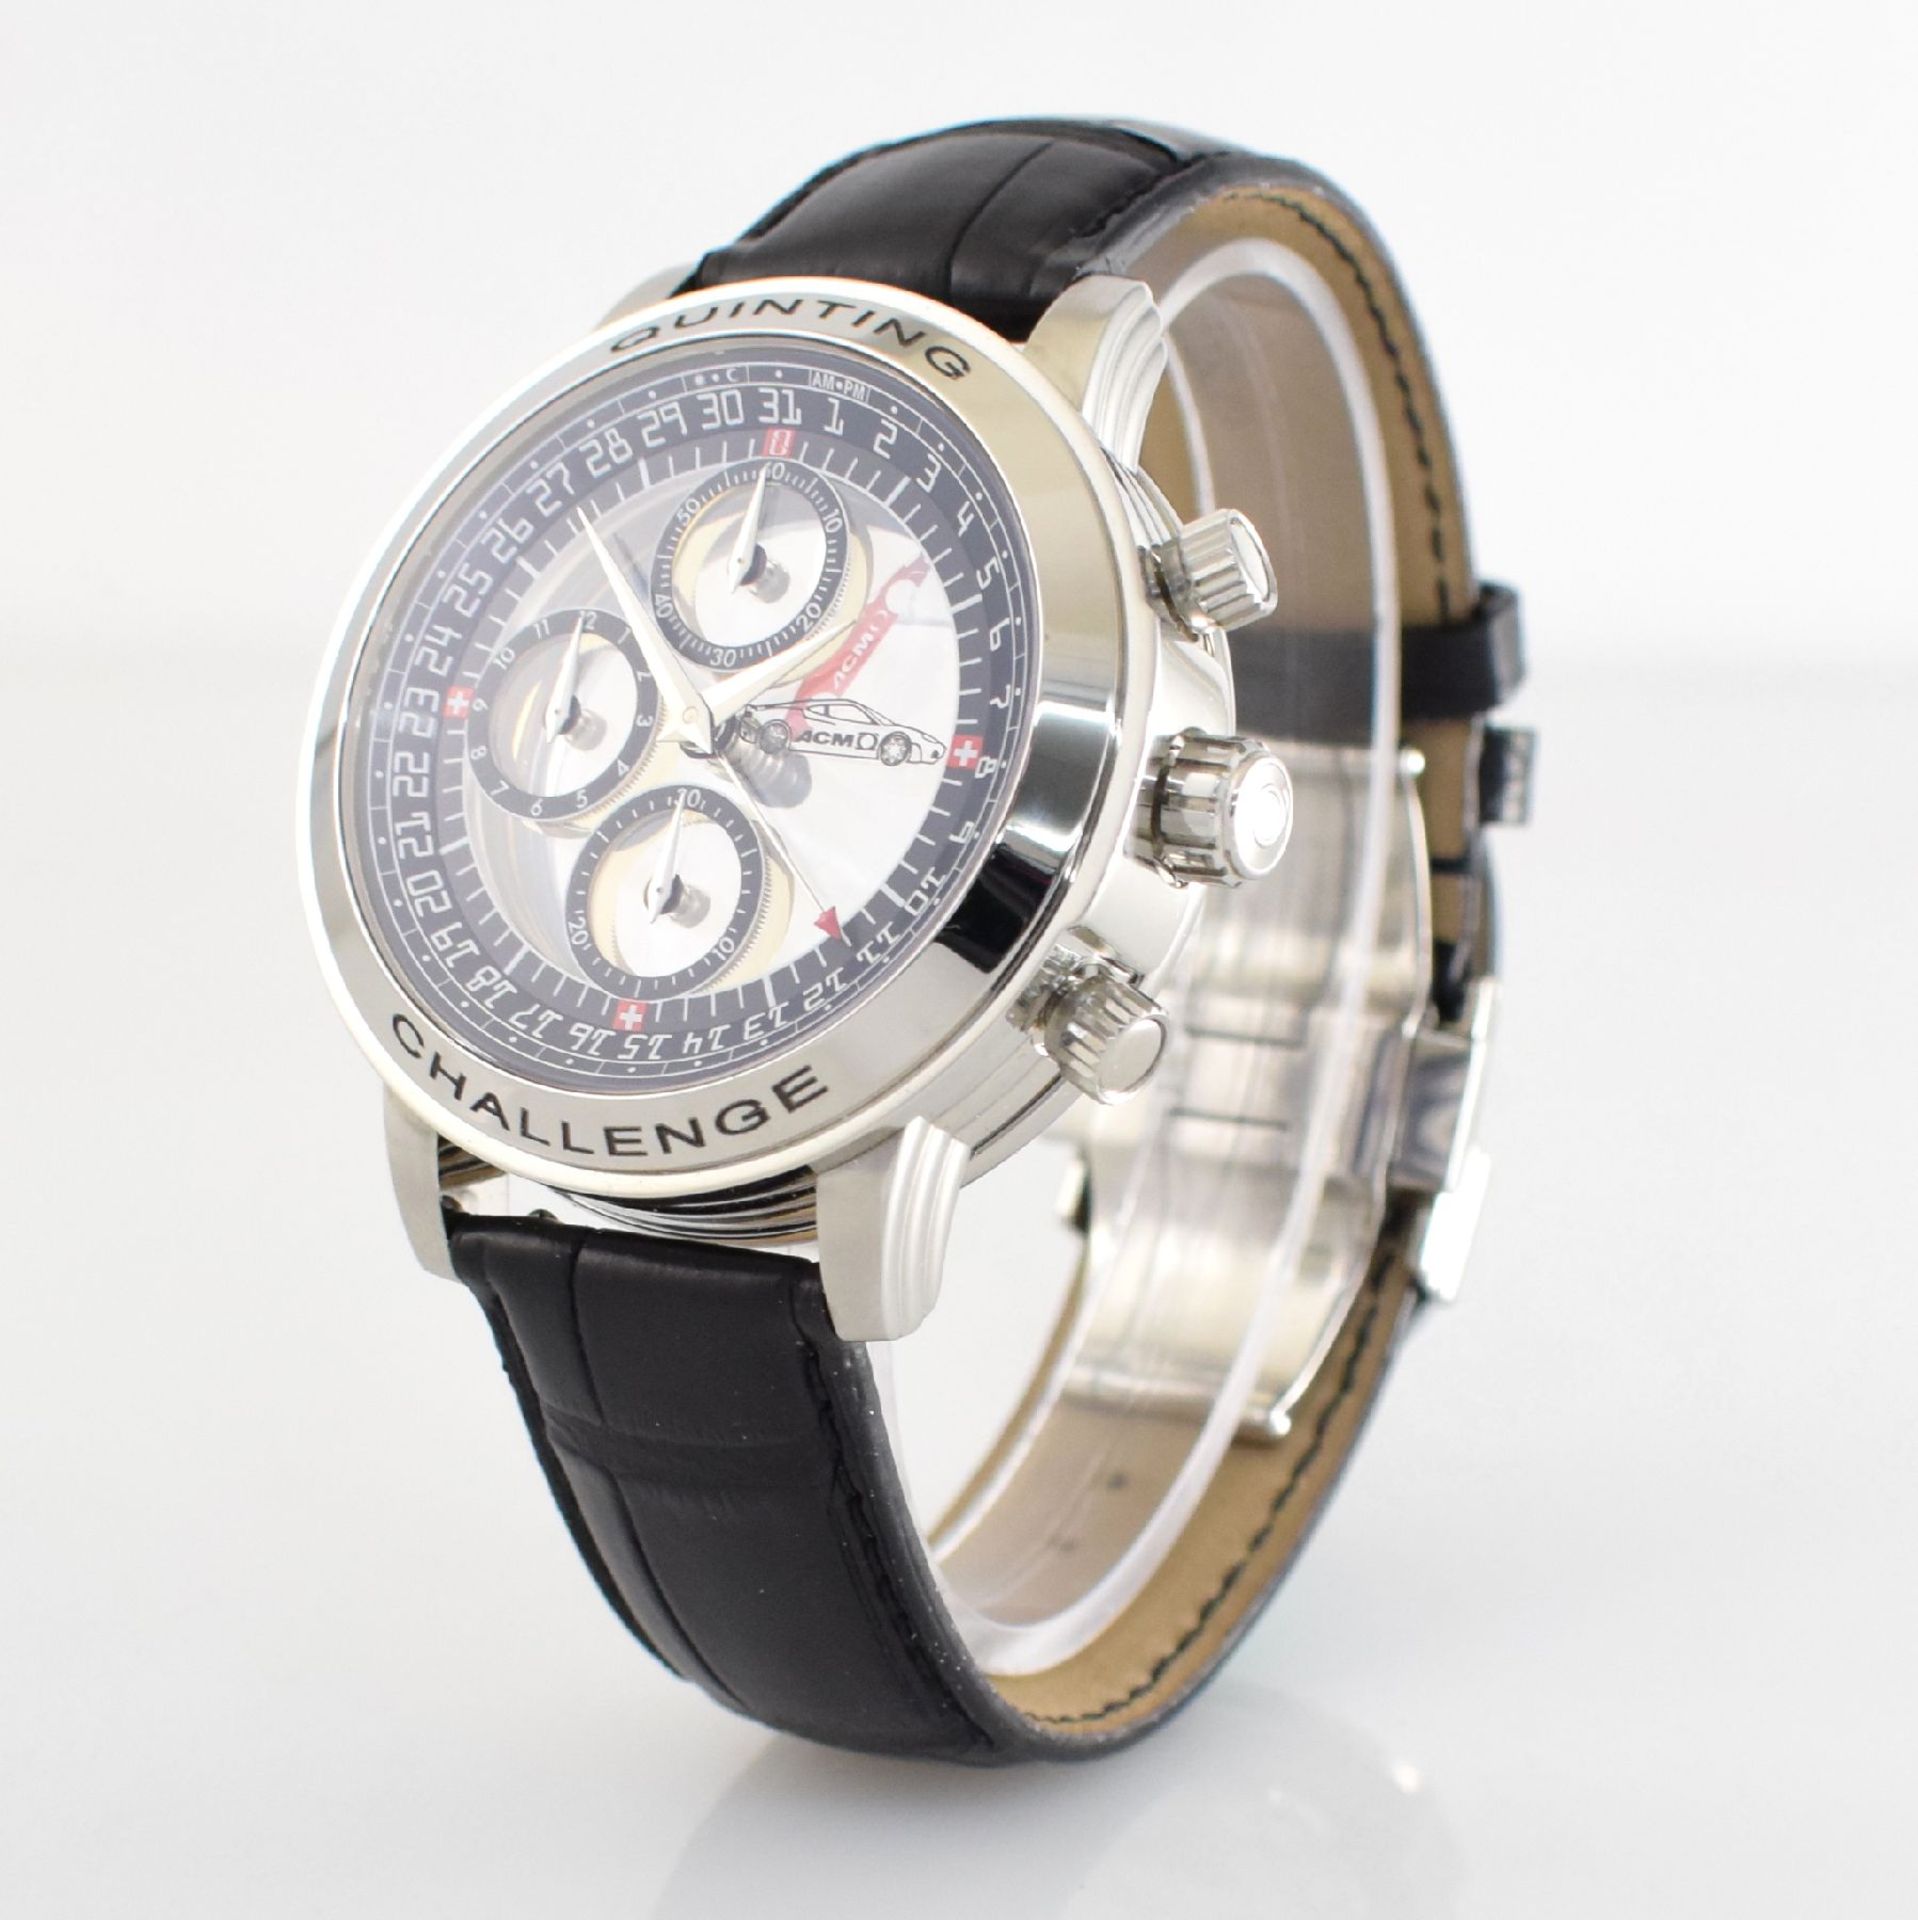 QUINTING seltener Armbandchronograph mit mysterieuser Anzeige "Ferrari Challenge", Ref. QSL55FC, auf - Bild 4 aus 8